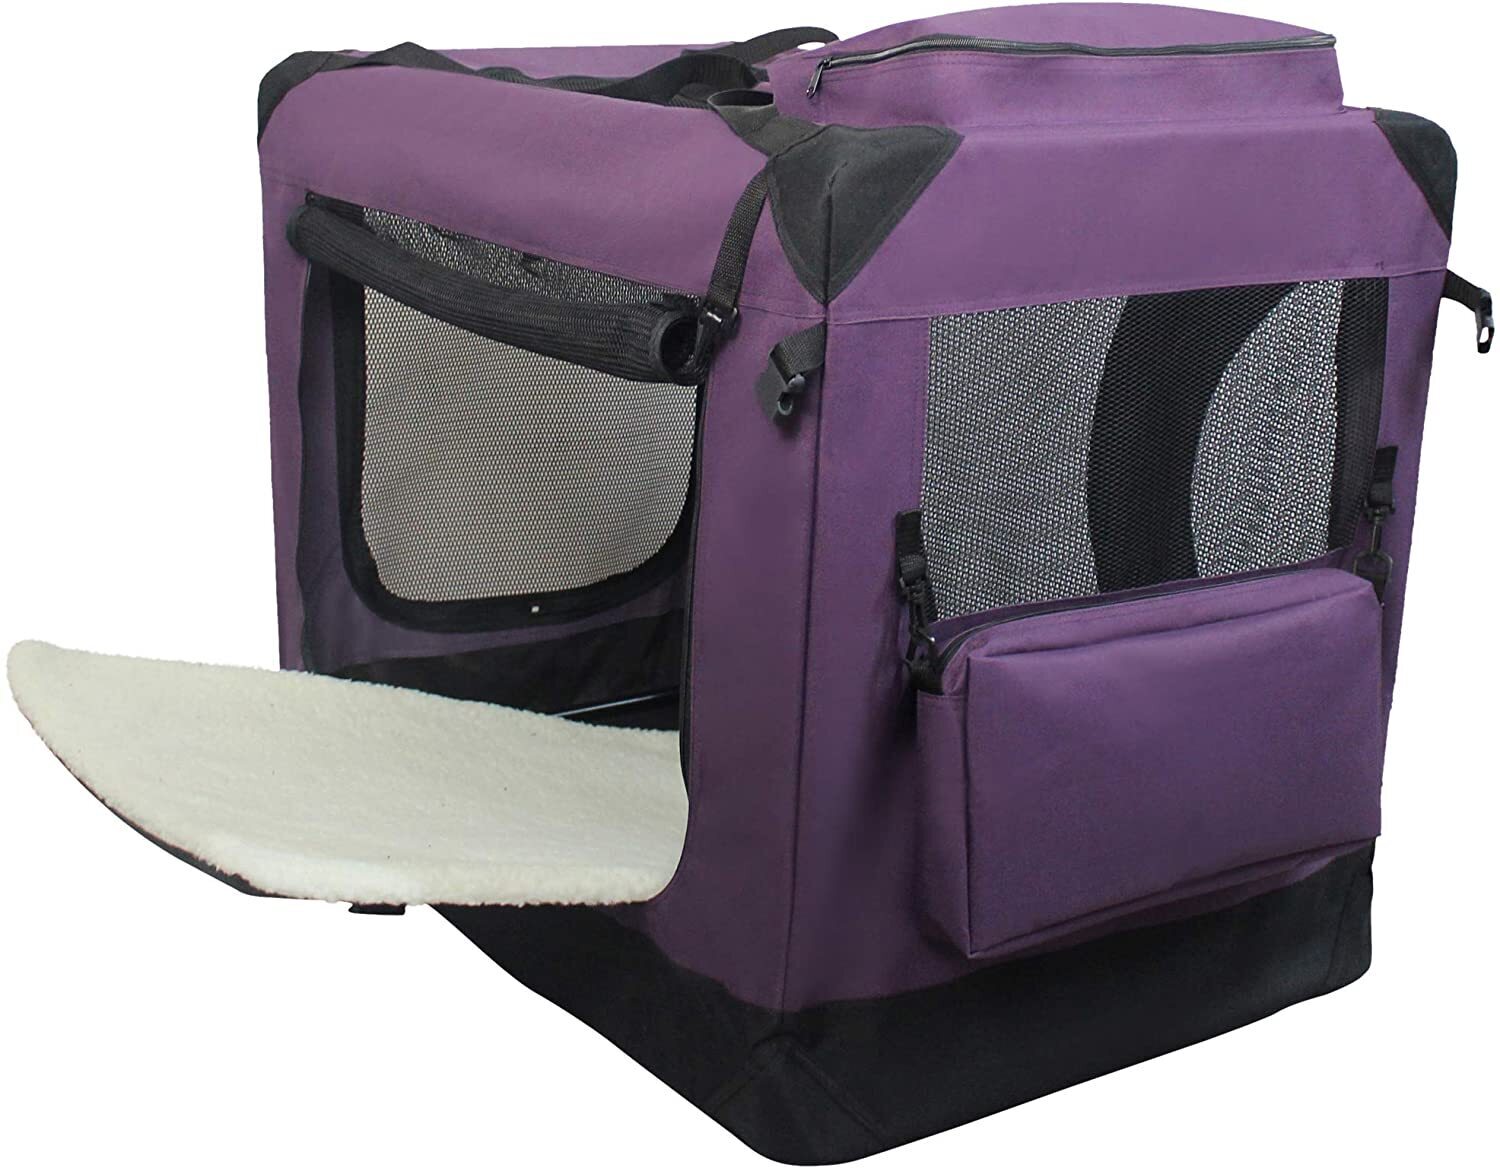 Portable purple pet carrier